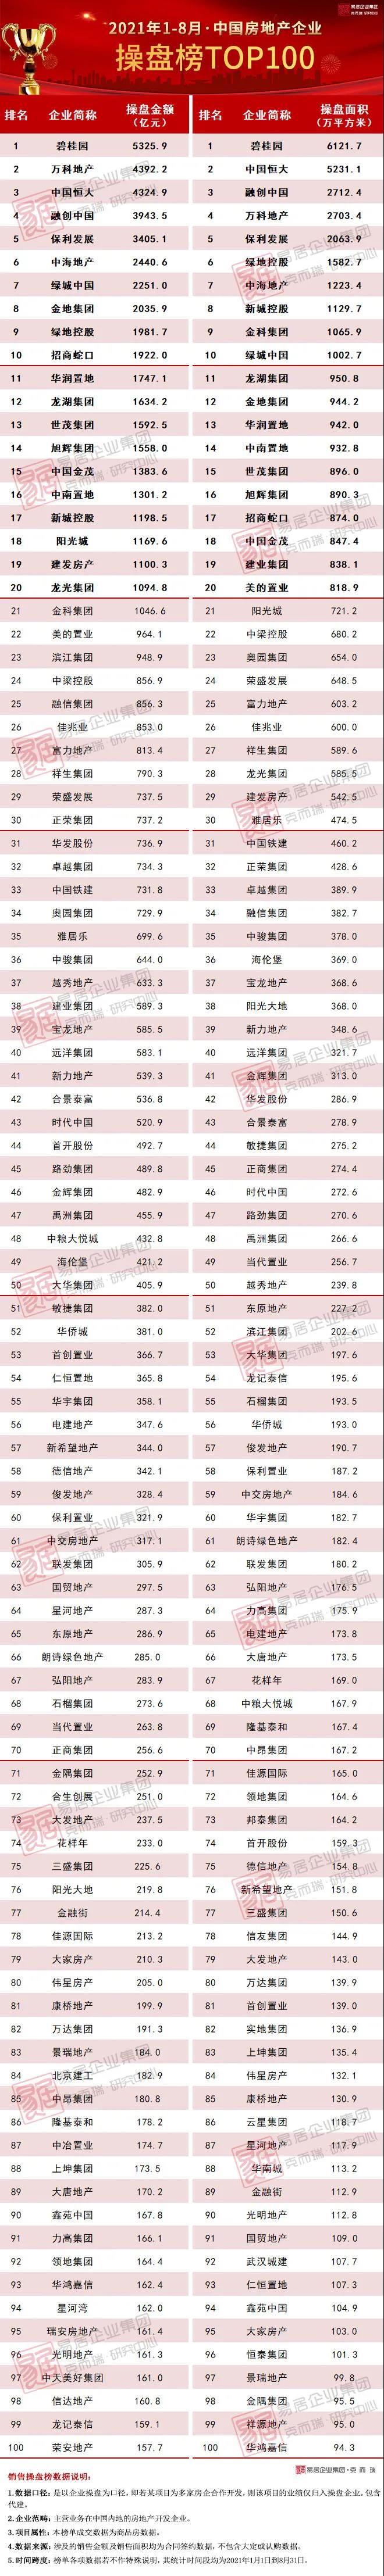 全国房价排行榜前100_2021年1-8月中国房地产企业销售前100排行榜